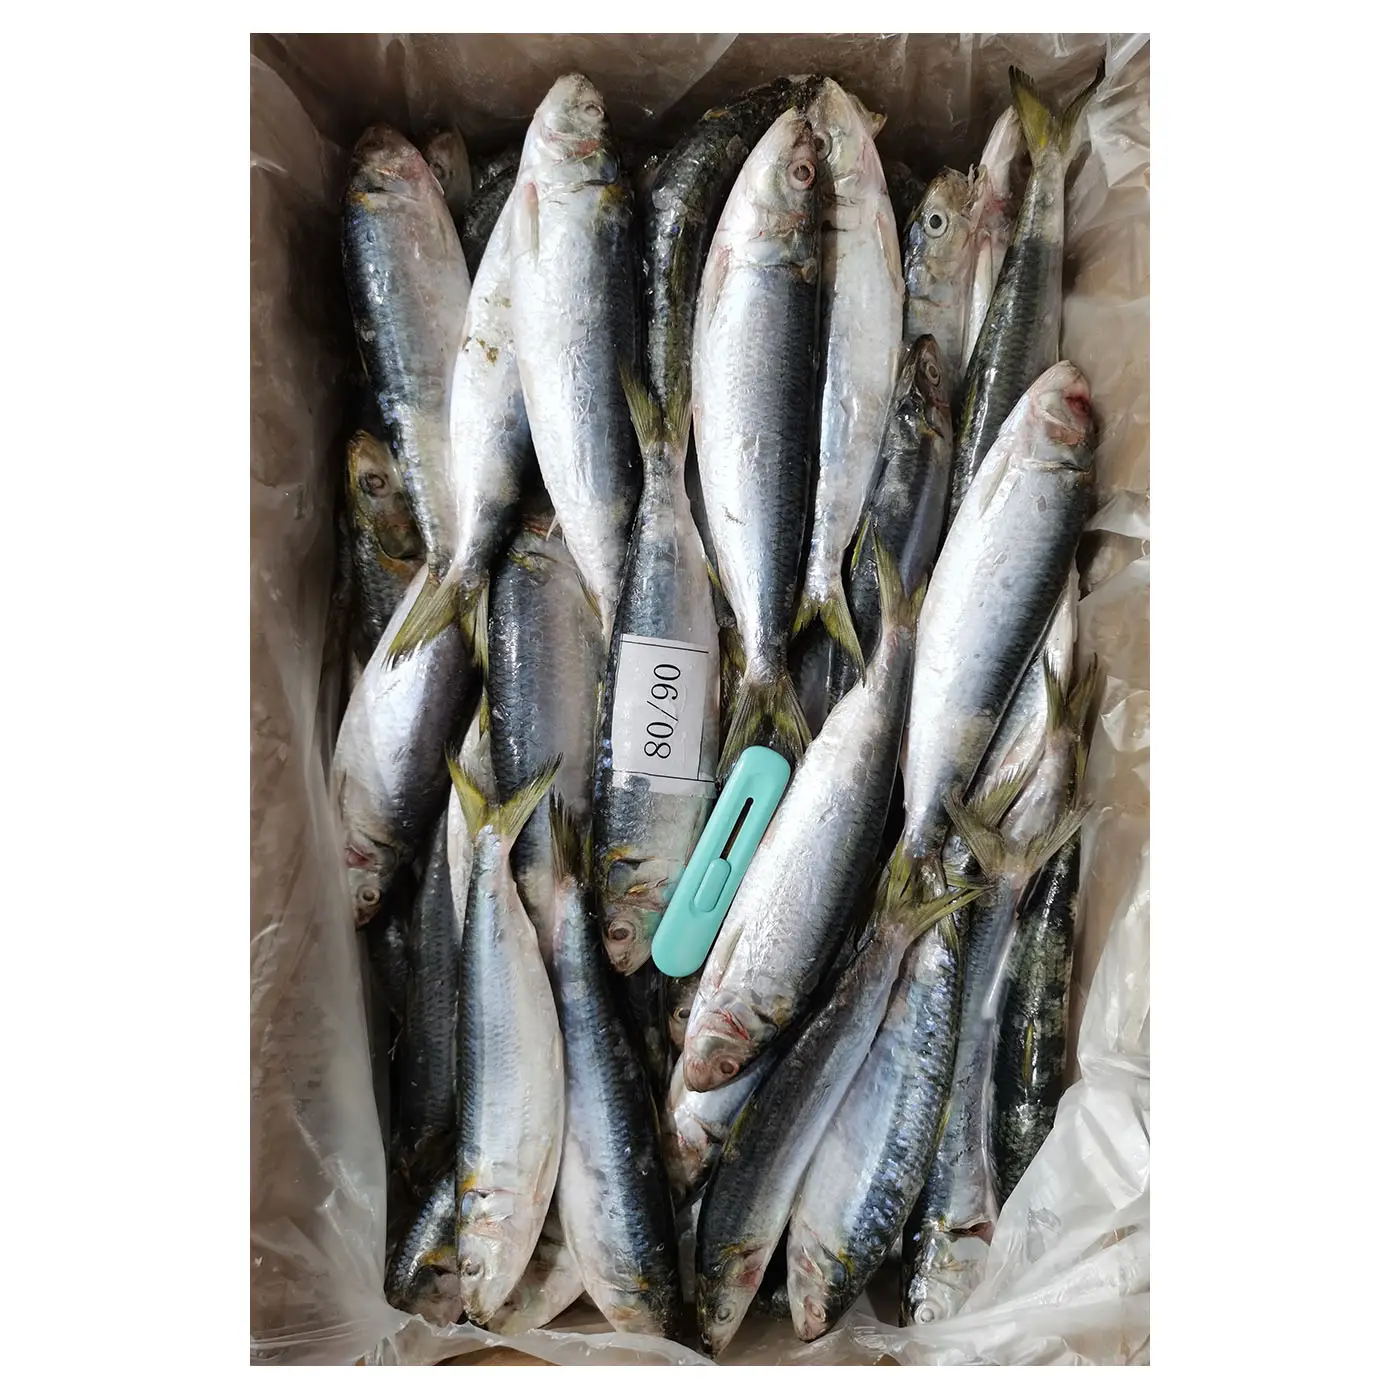 Хорошее качество оптовая продажа 80-90 шт замороженная рыба сардины морепродукты BQF замороженная свежая ЦЕЛАЯ РЫБА сардины в продаже